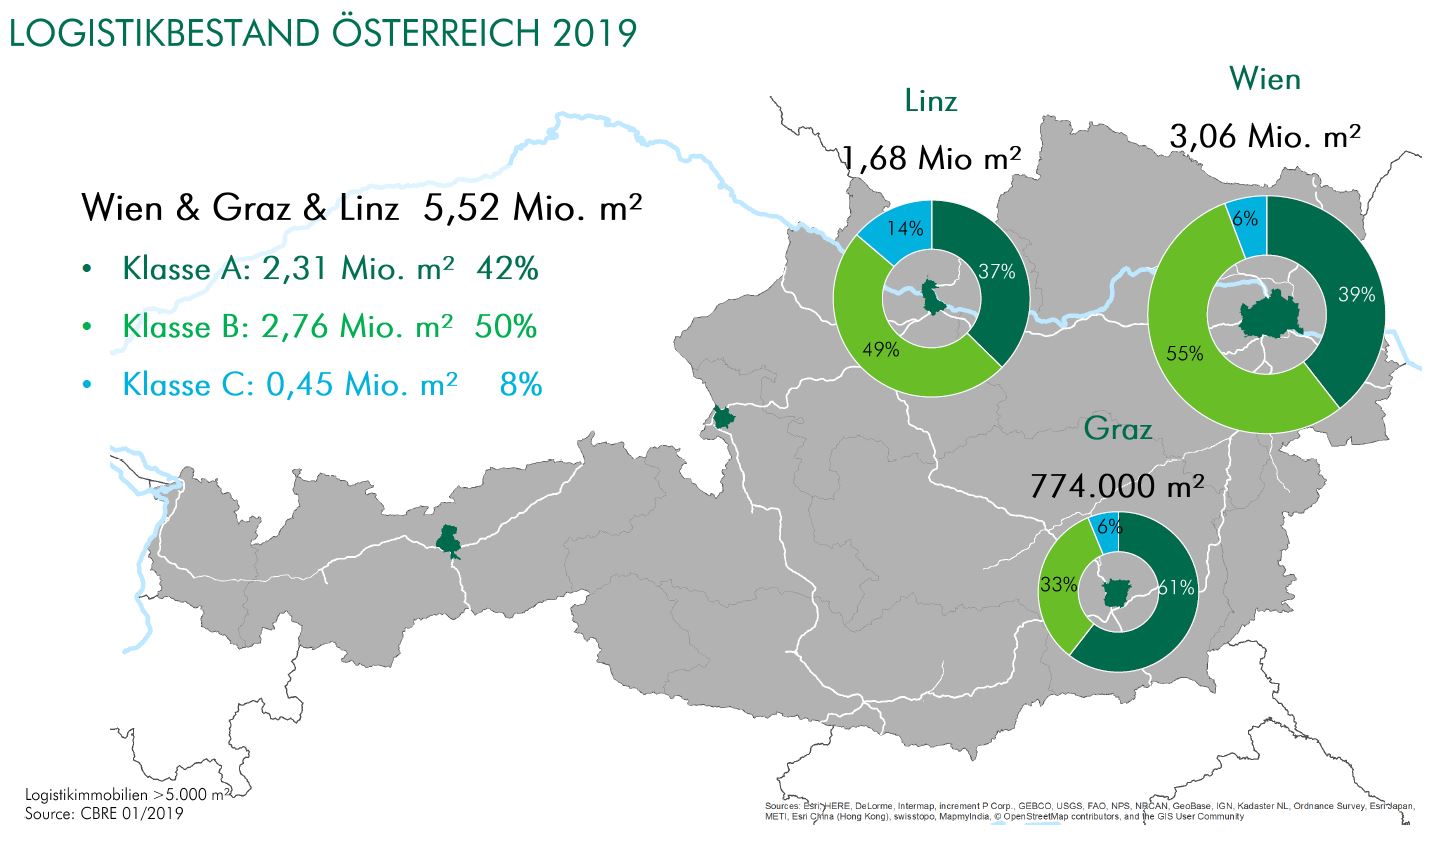 Österreich bekommt rund 350.000 m² neue Logistikflächen